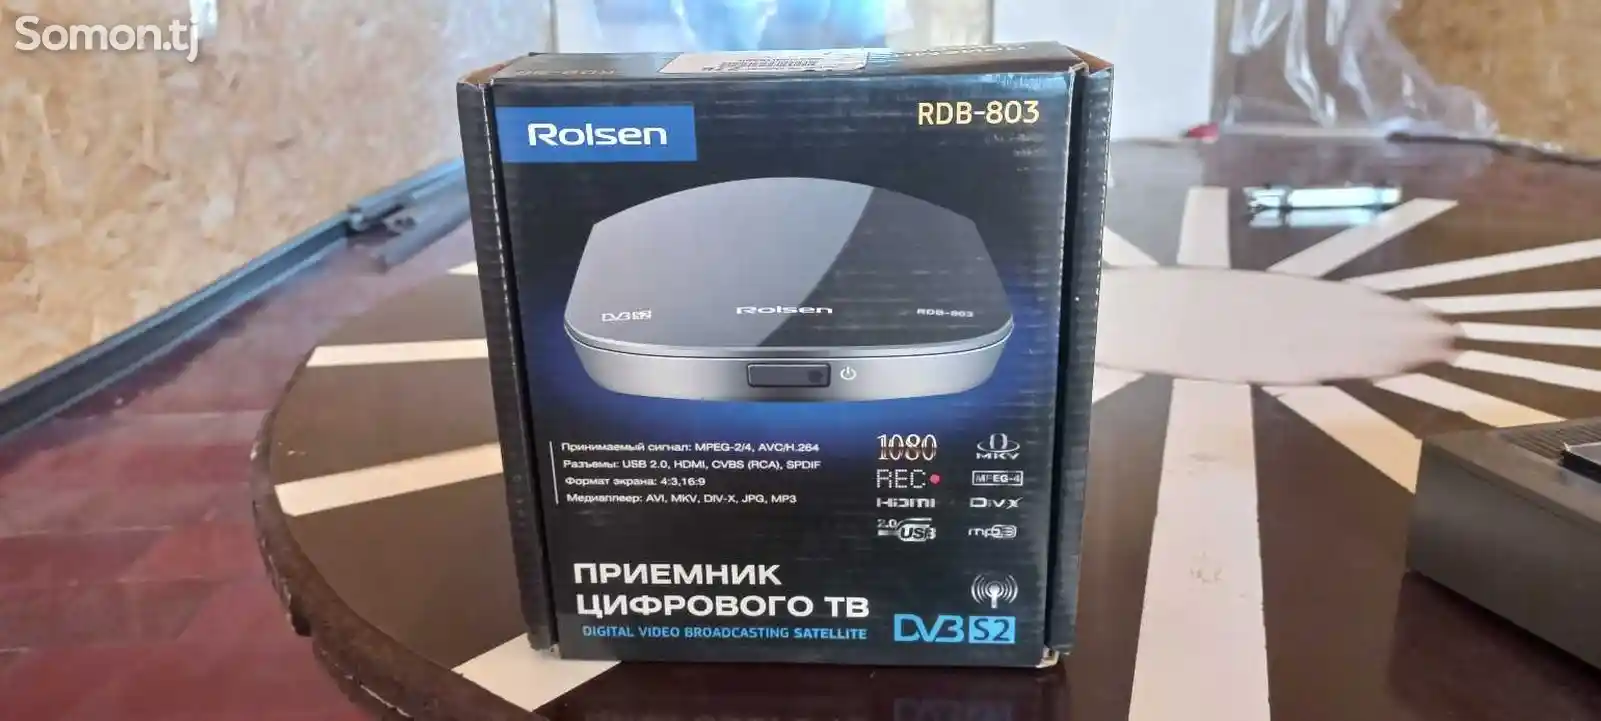 Приёмник цифрового ТВ Rolser RDB-803-1